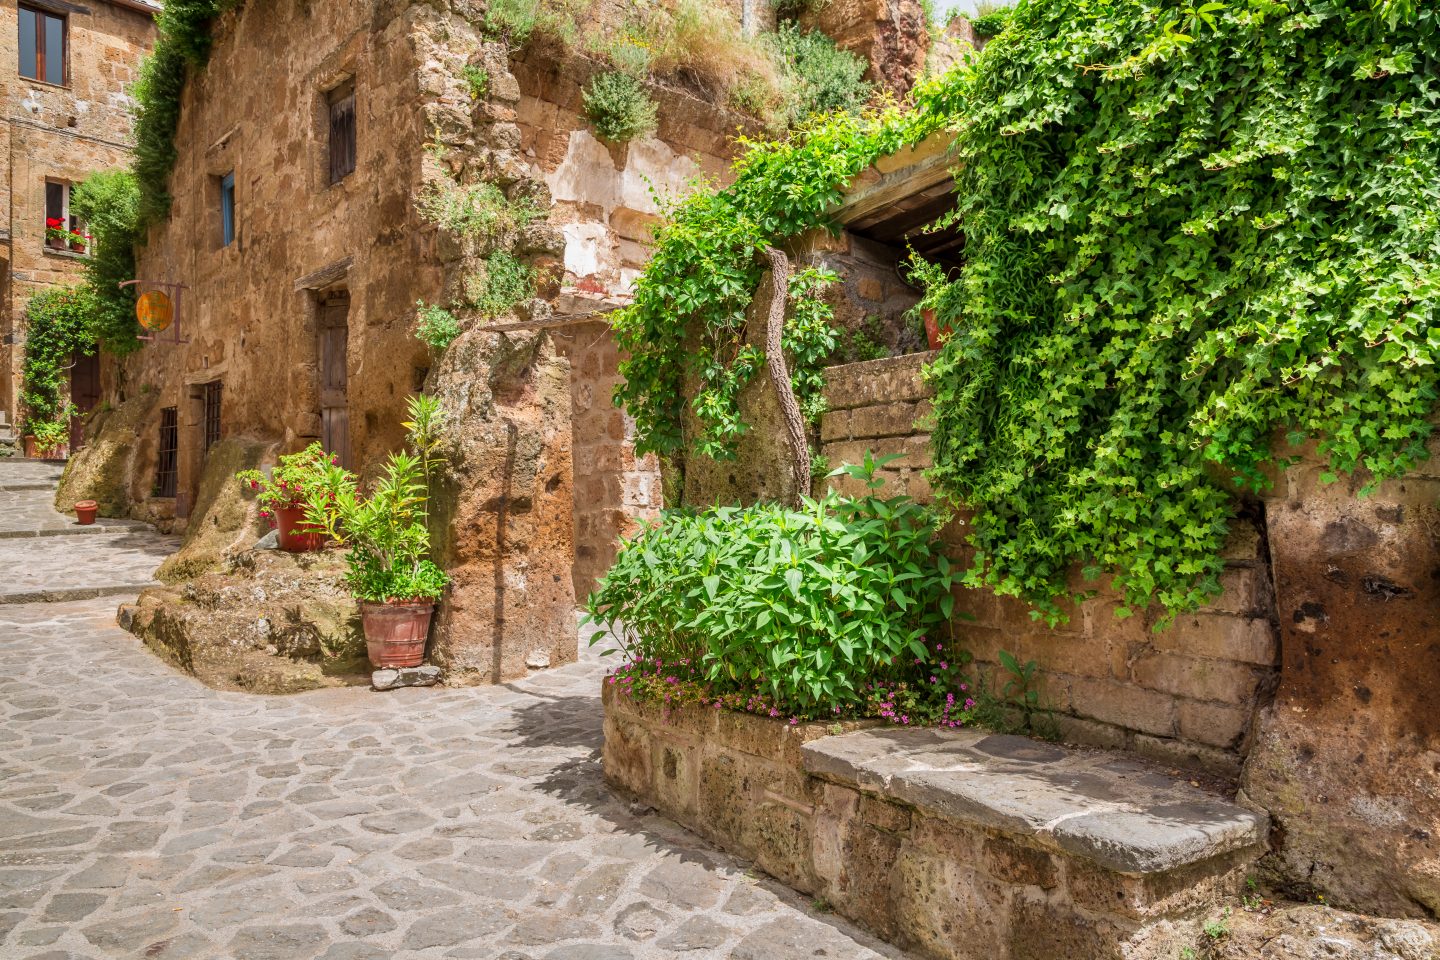 Ancienne ville de Toscanne, destination idéale pour voyager en avril